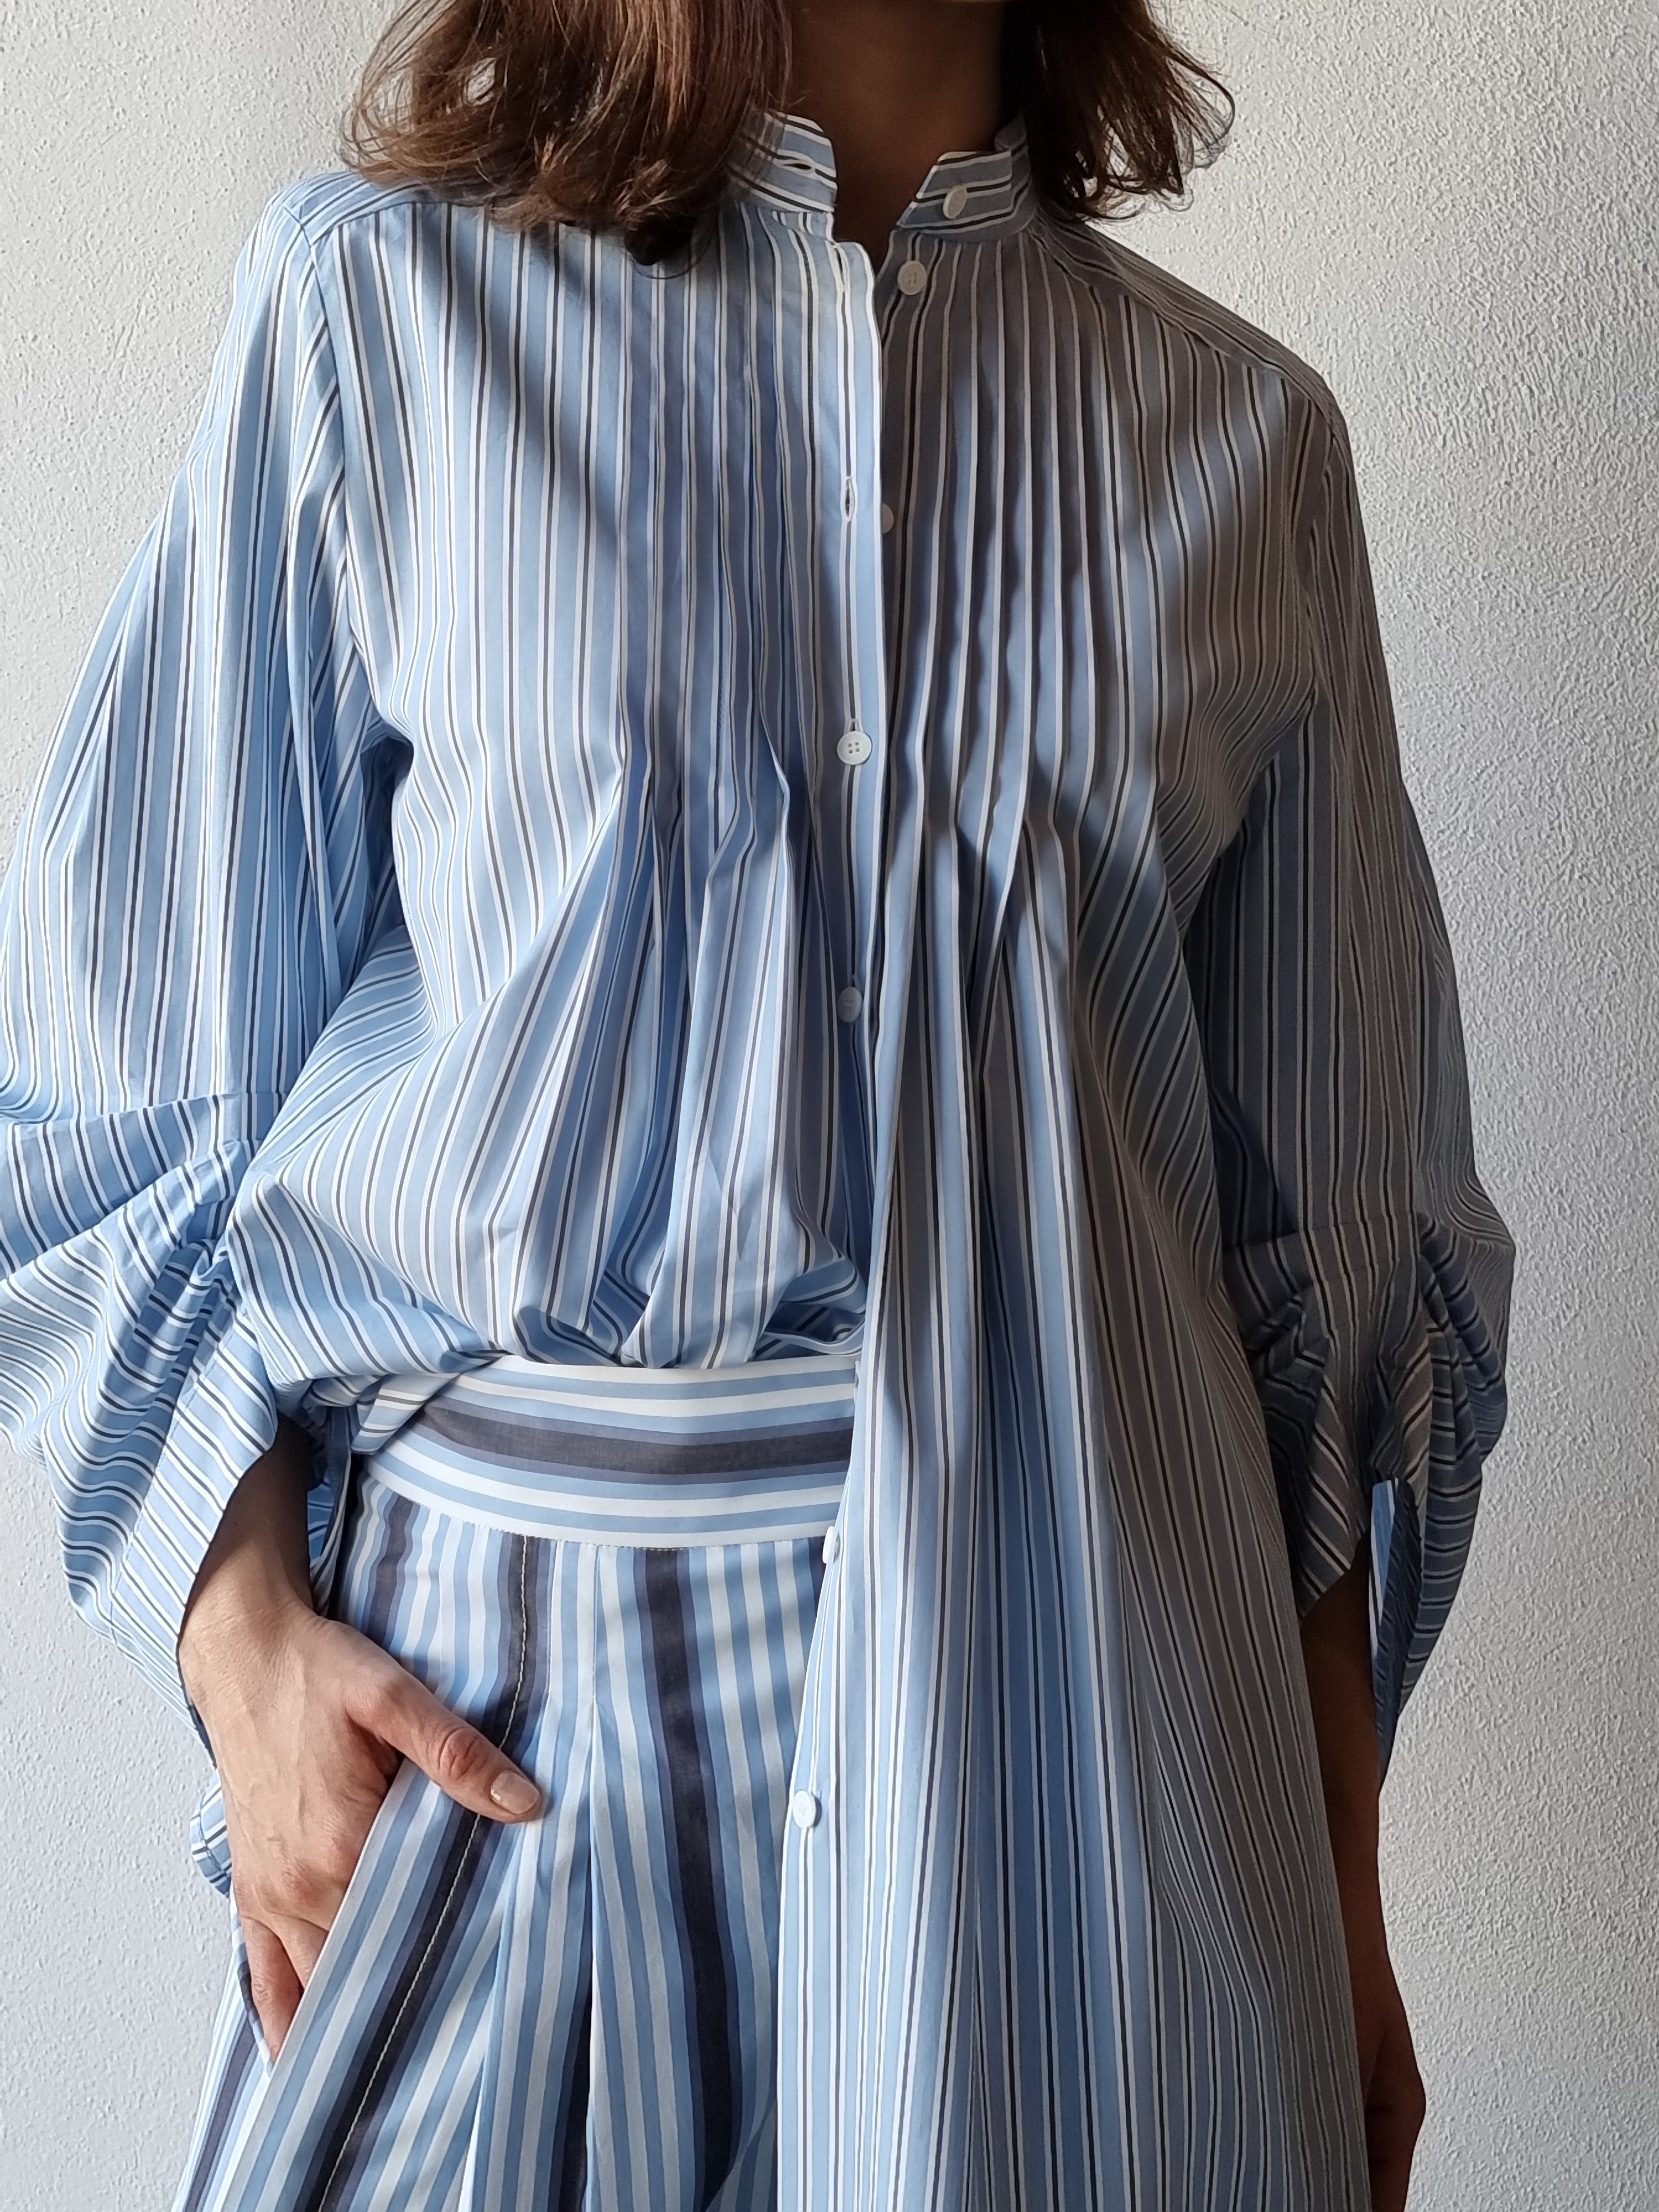 Alberta Ferretti – Camicia rigata blu